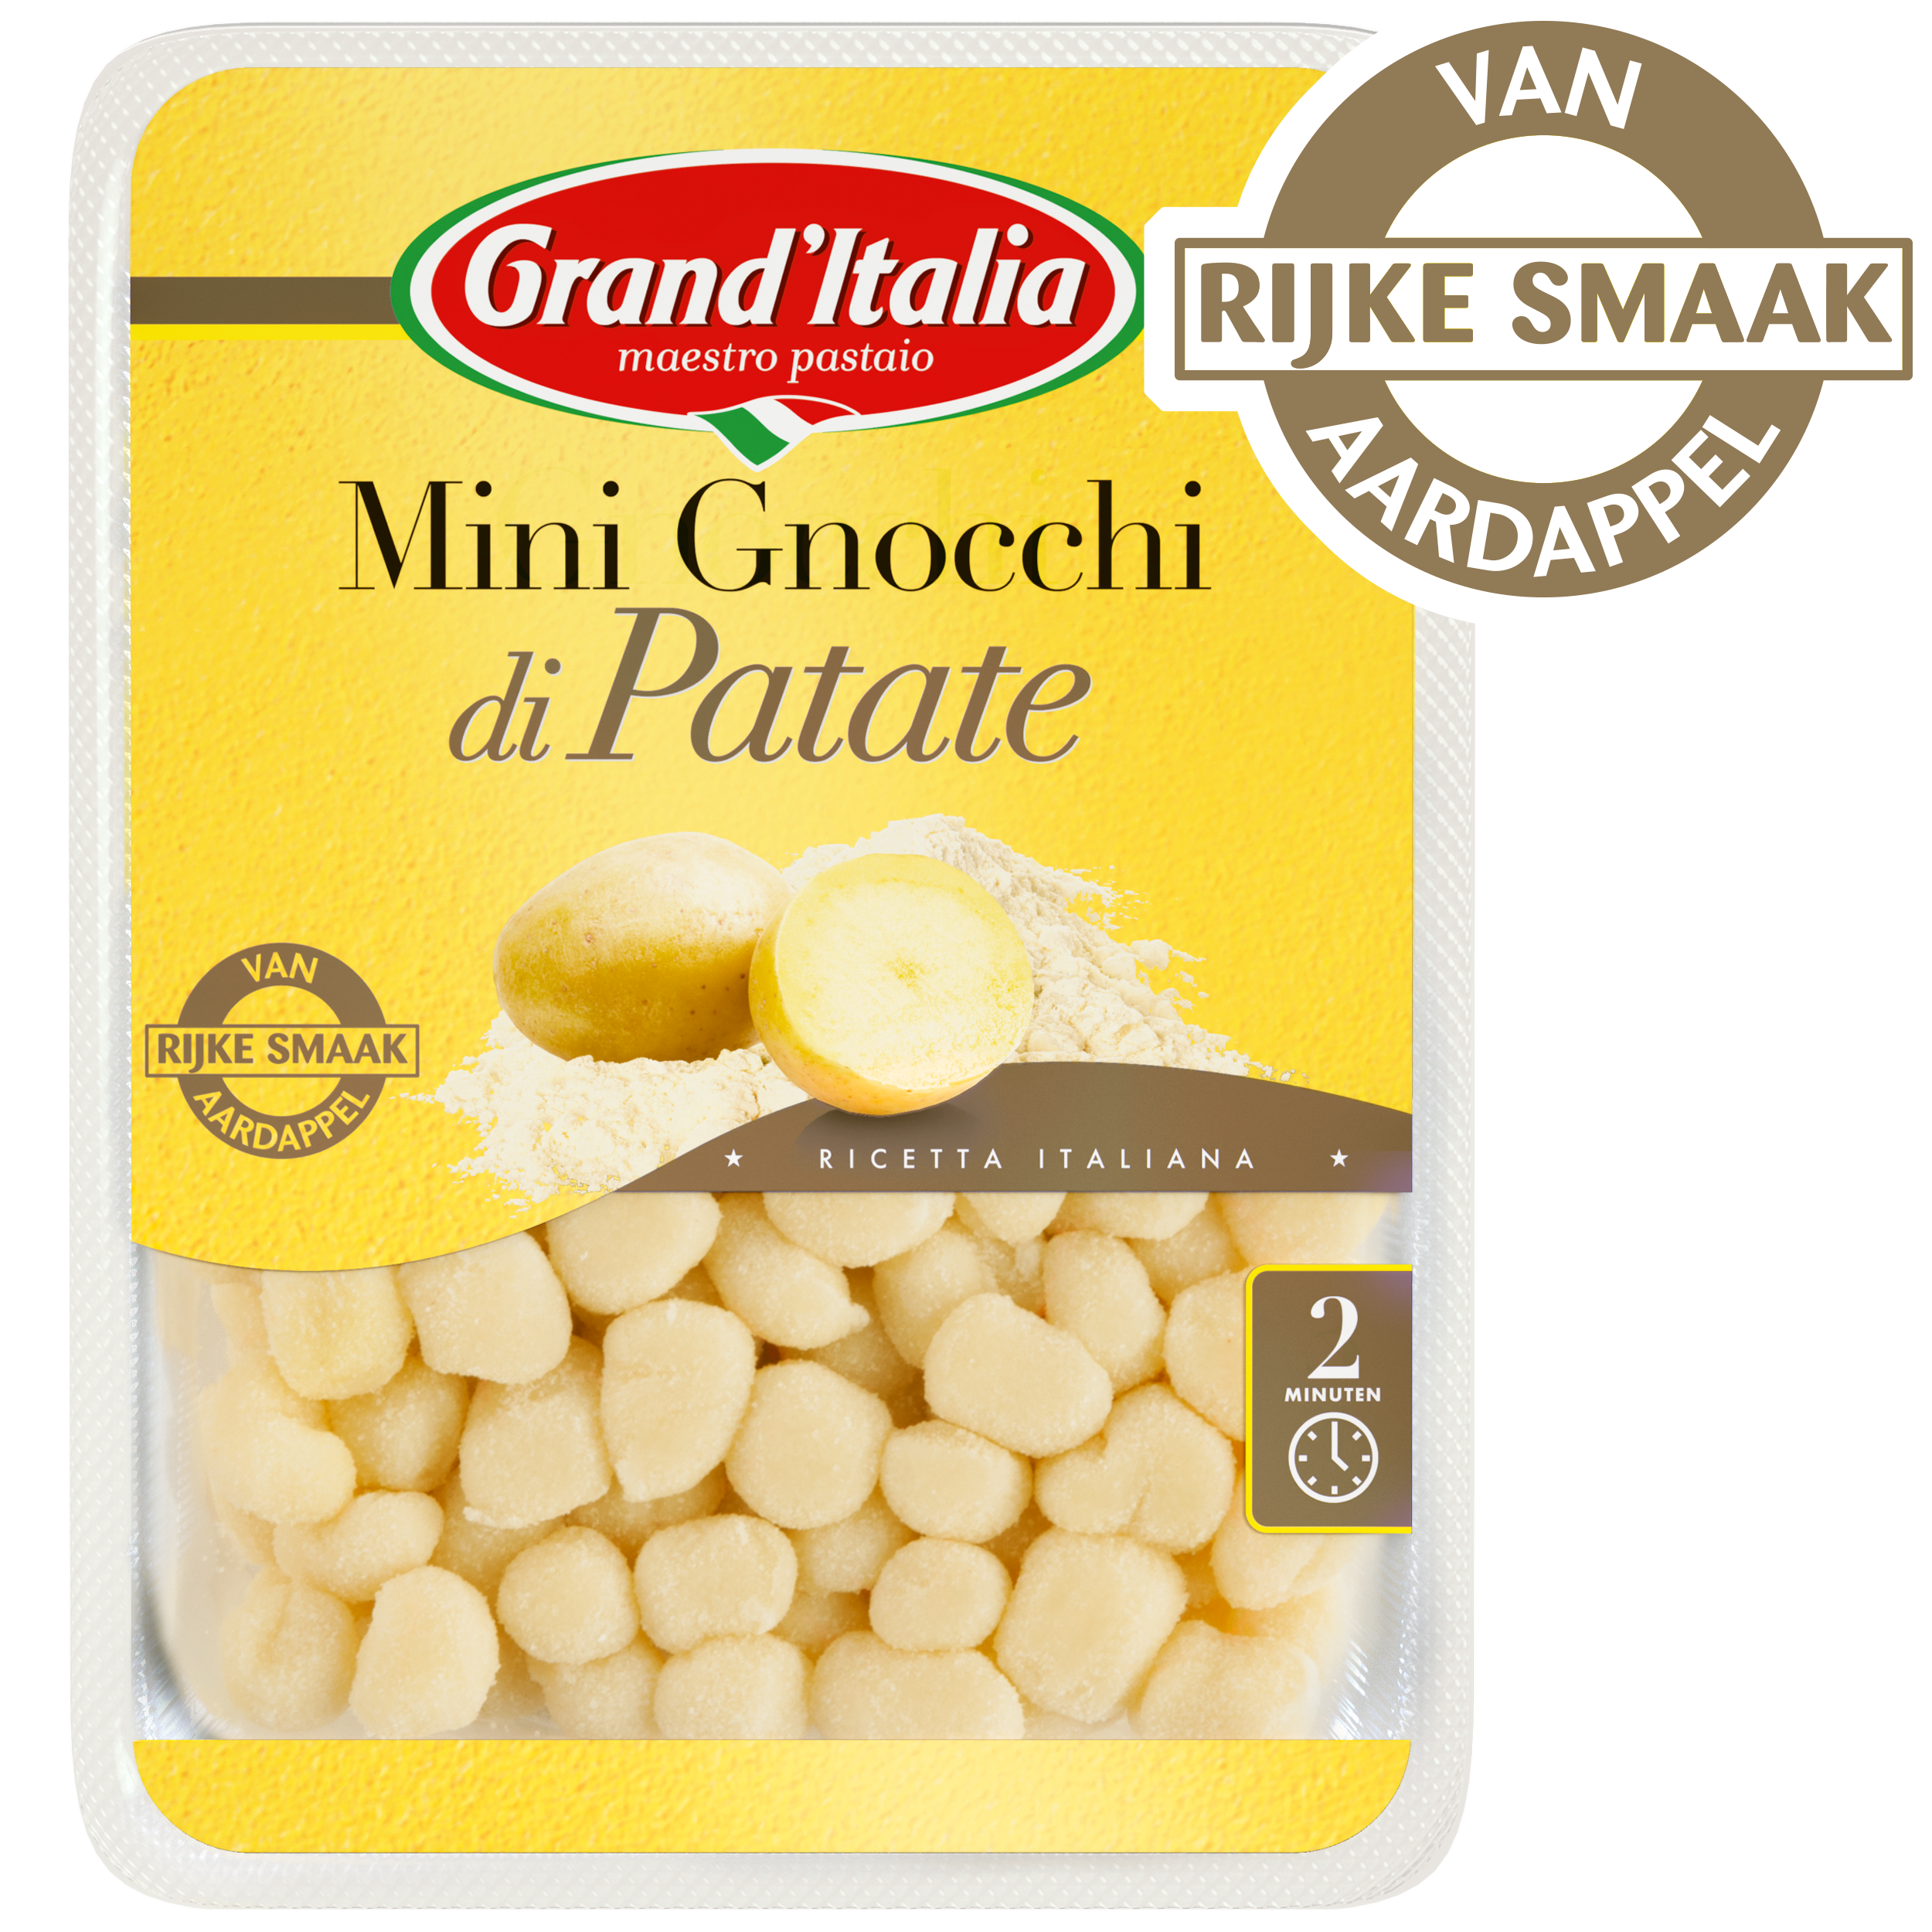 Mini Gnocchi di Patate 500g claim Grand'Italia